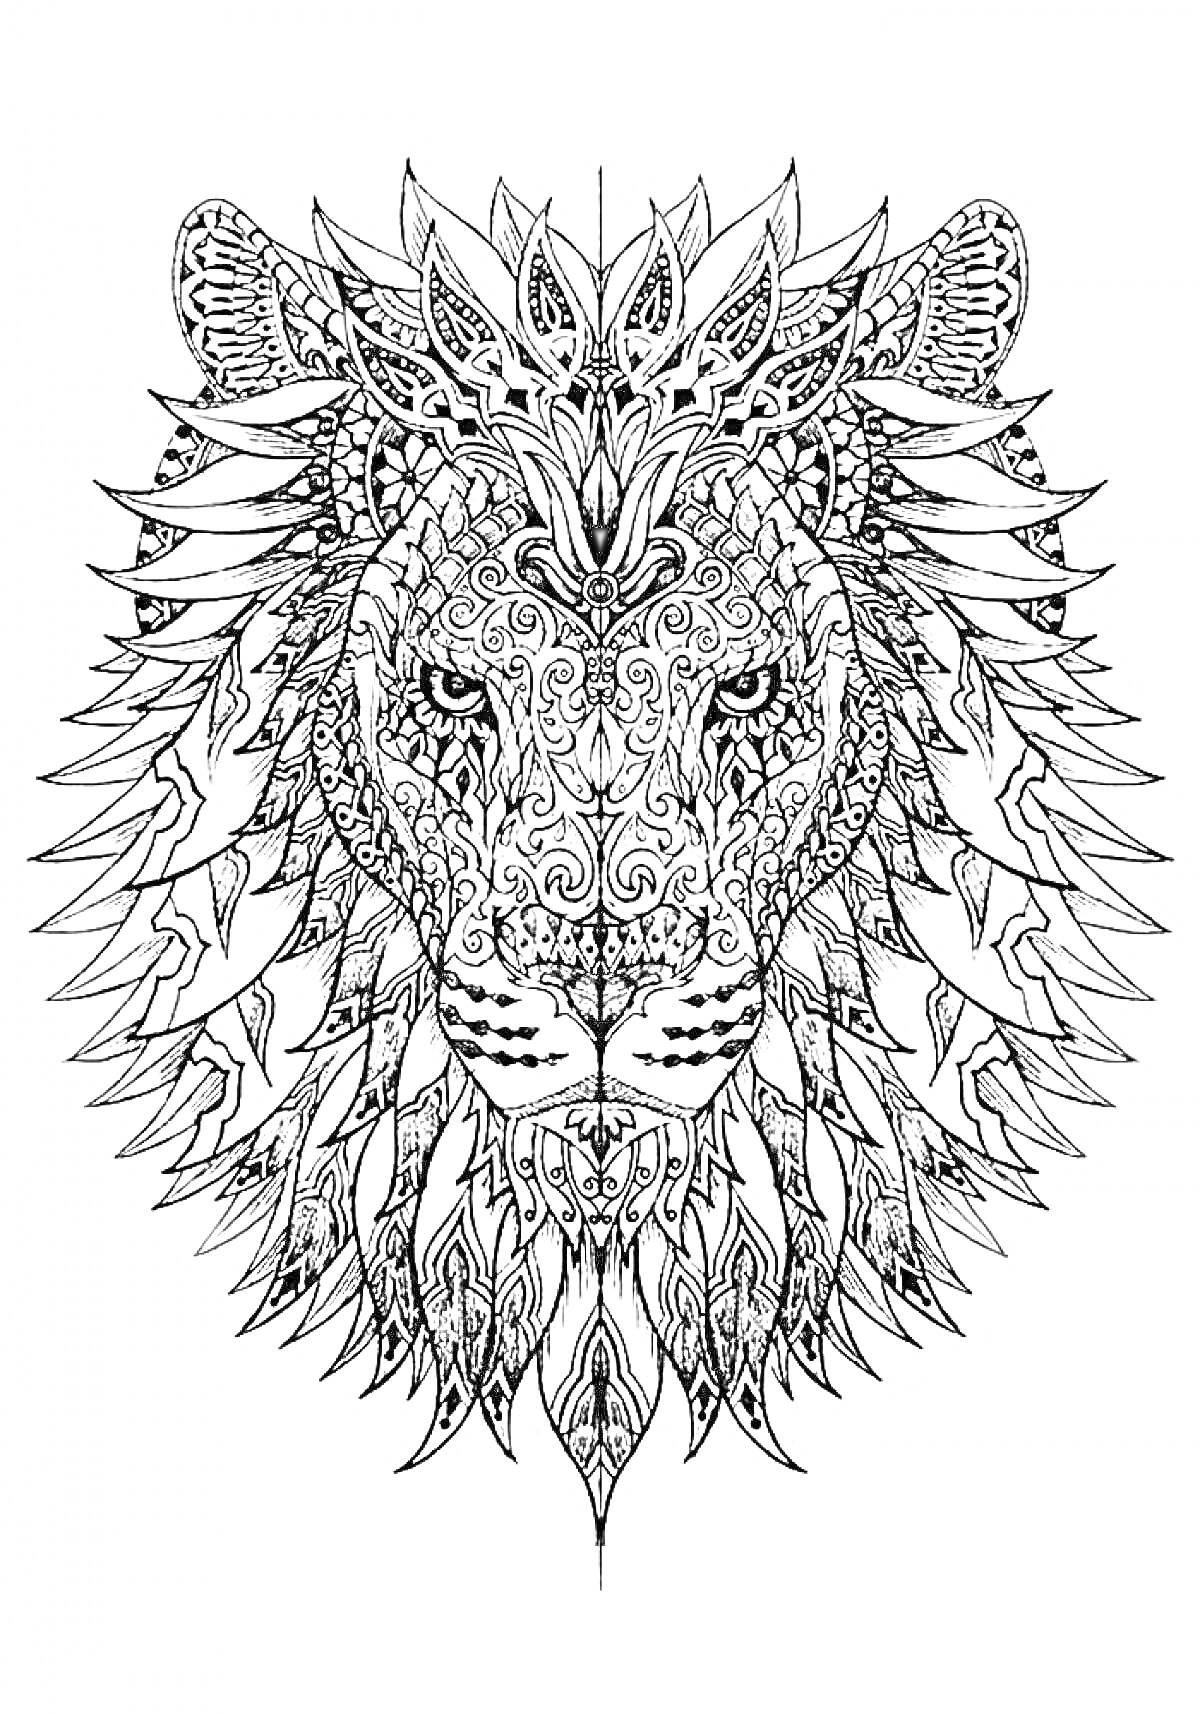 Рисунок головы льва с декоративными узорами и орнаментами